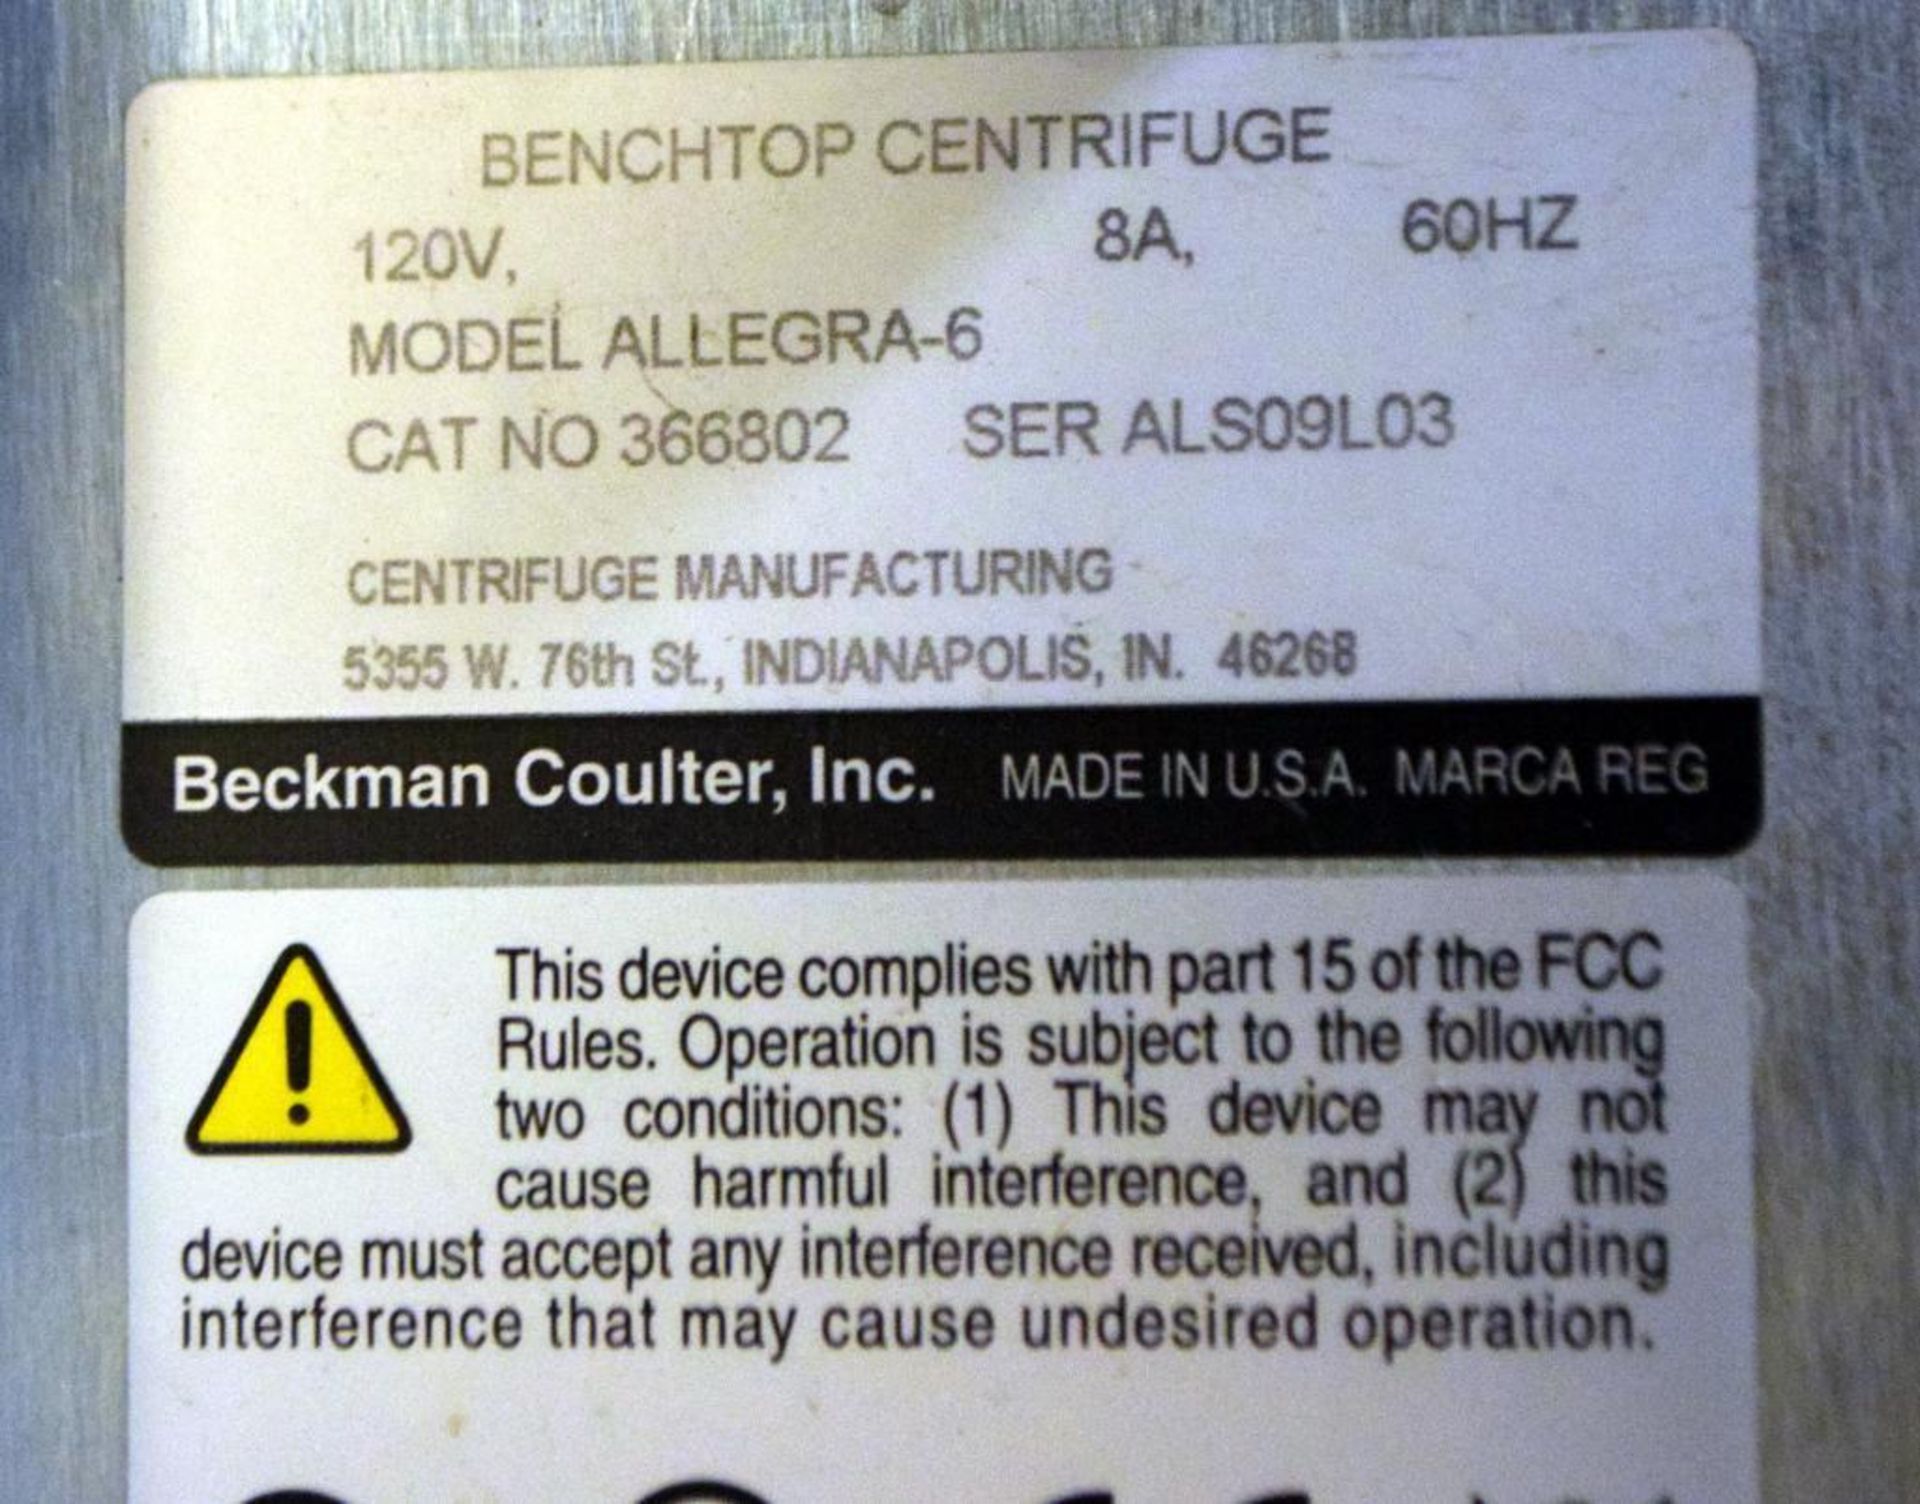 BECKMAN COULTER Allegra-6 Benchtop Centrifuge, Catalog# 366802, S/N ALS09L3 - Image 4 of 4